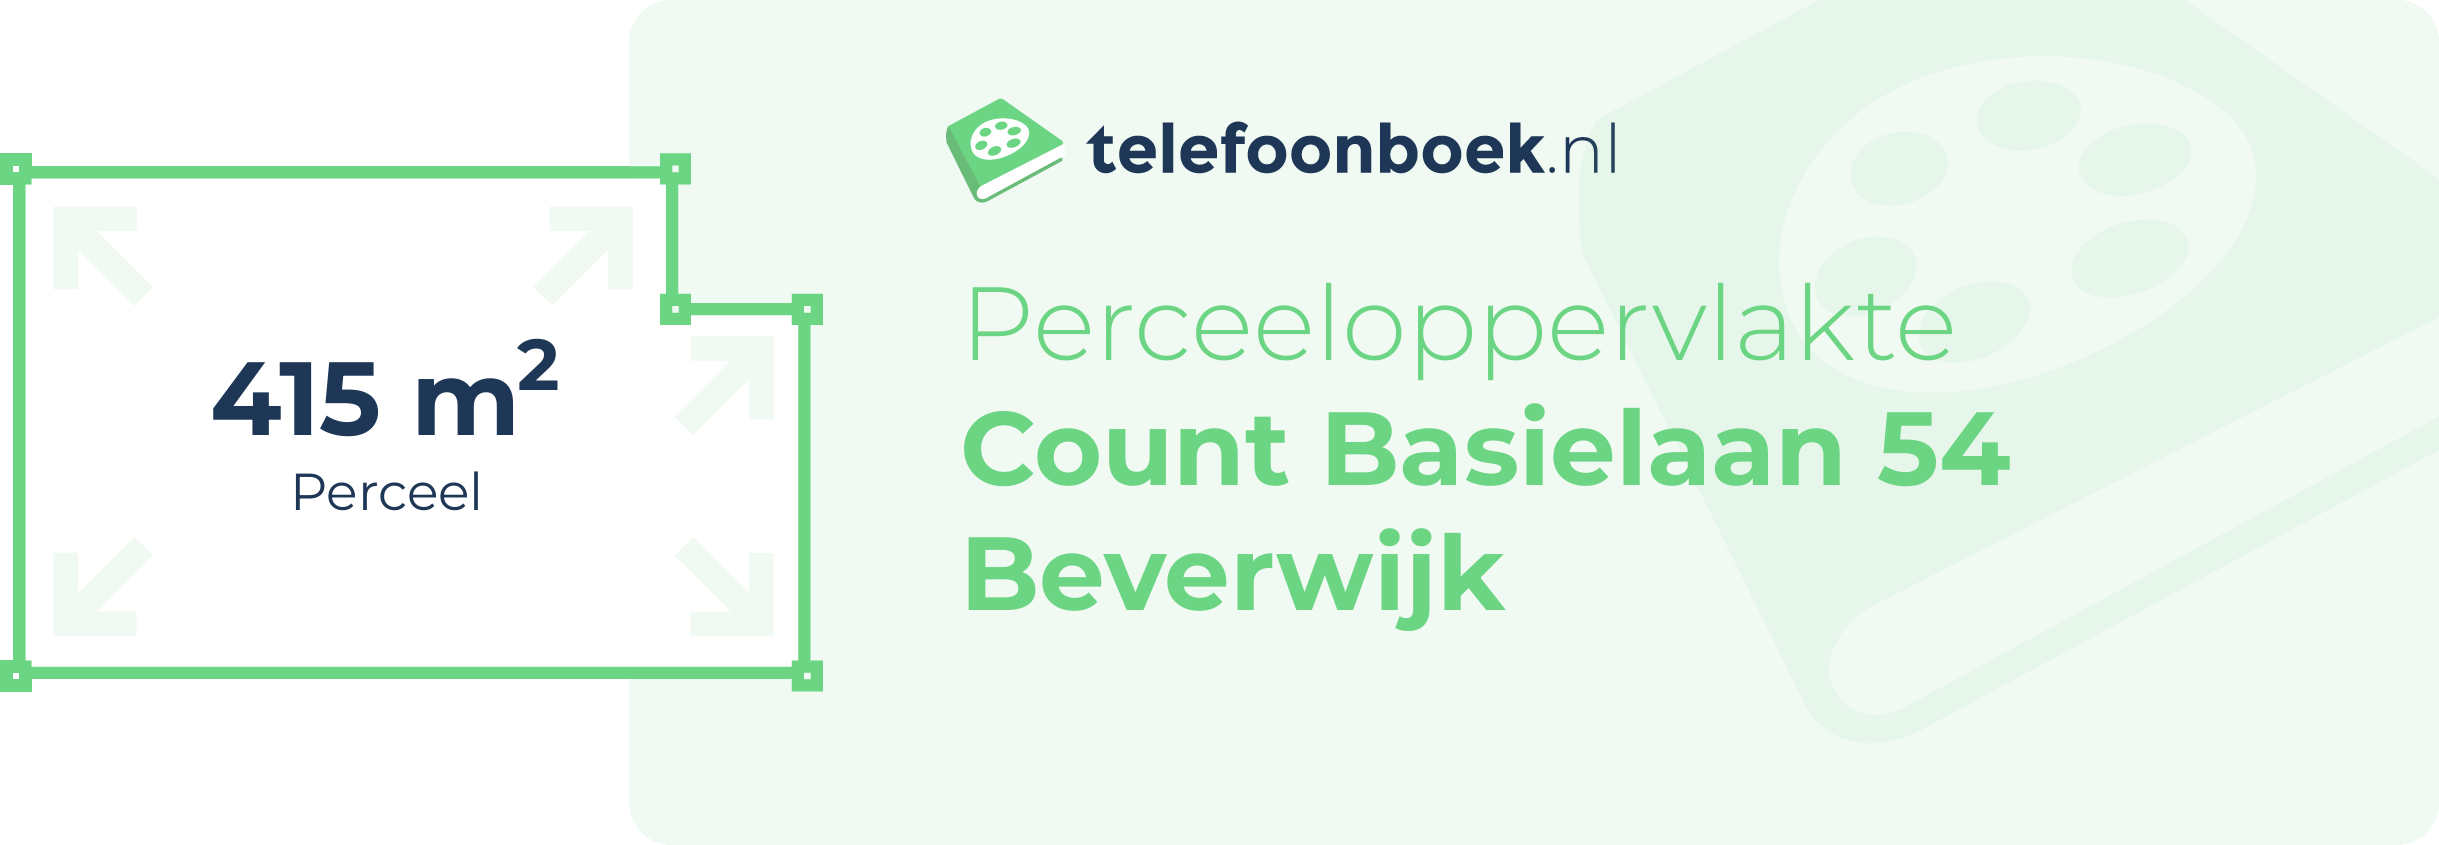 Perceeloppervlakte Count Basielaan 54 Beverwijk